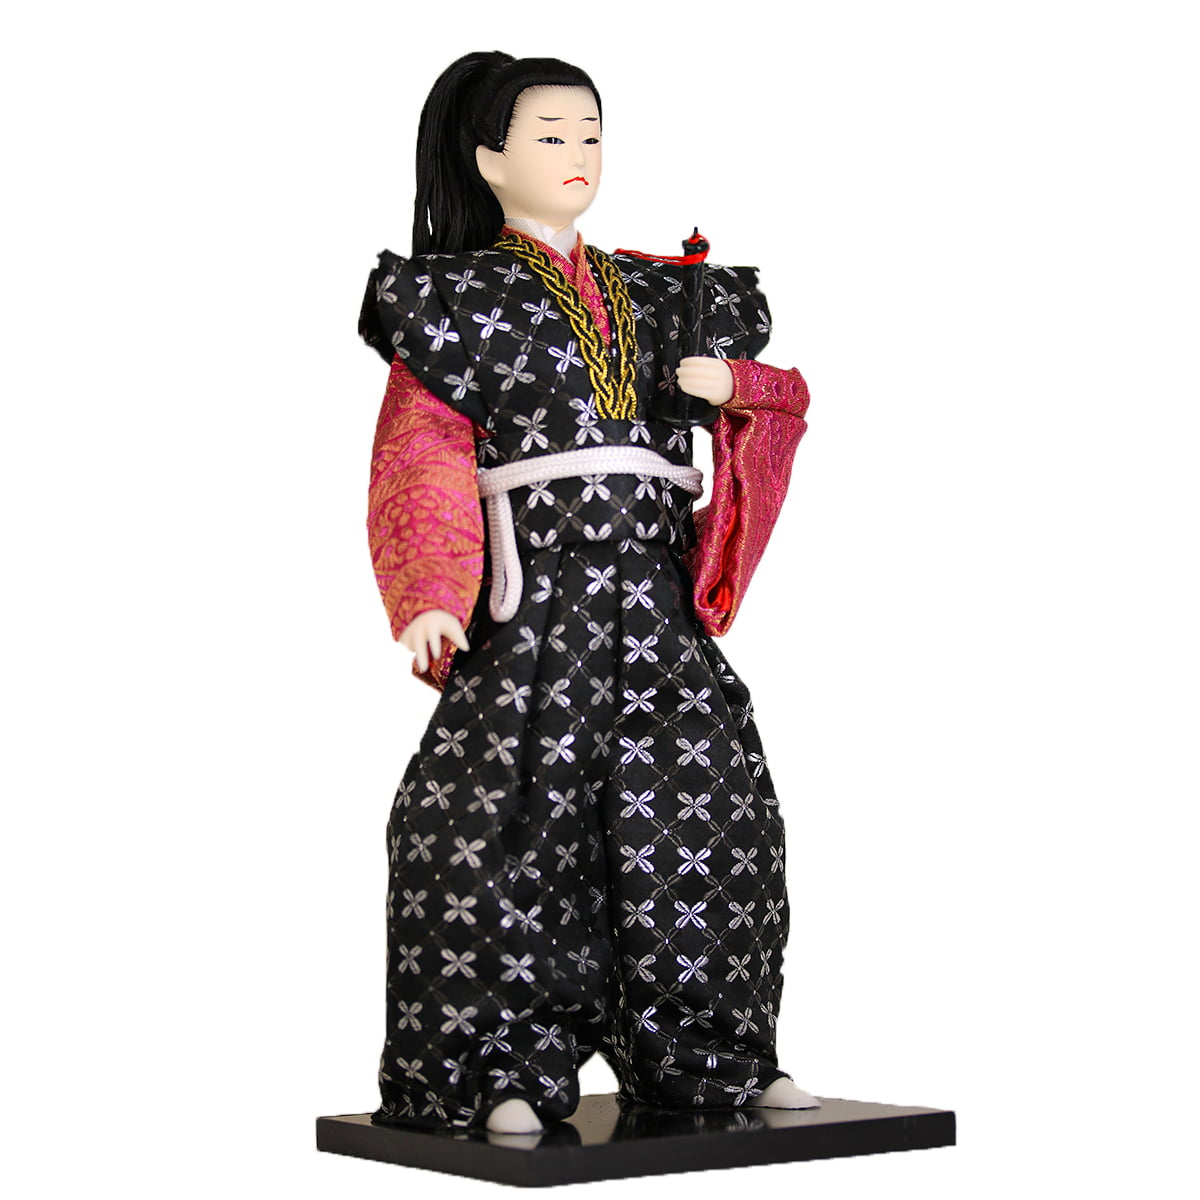 Boneco Japonês Samurai com Kimono Preto, Rosa e Espada - 30 cm